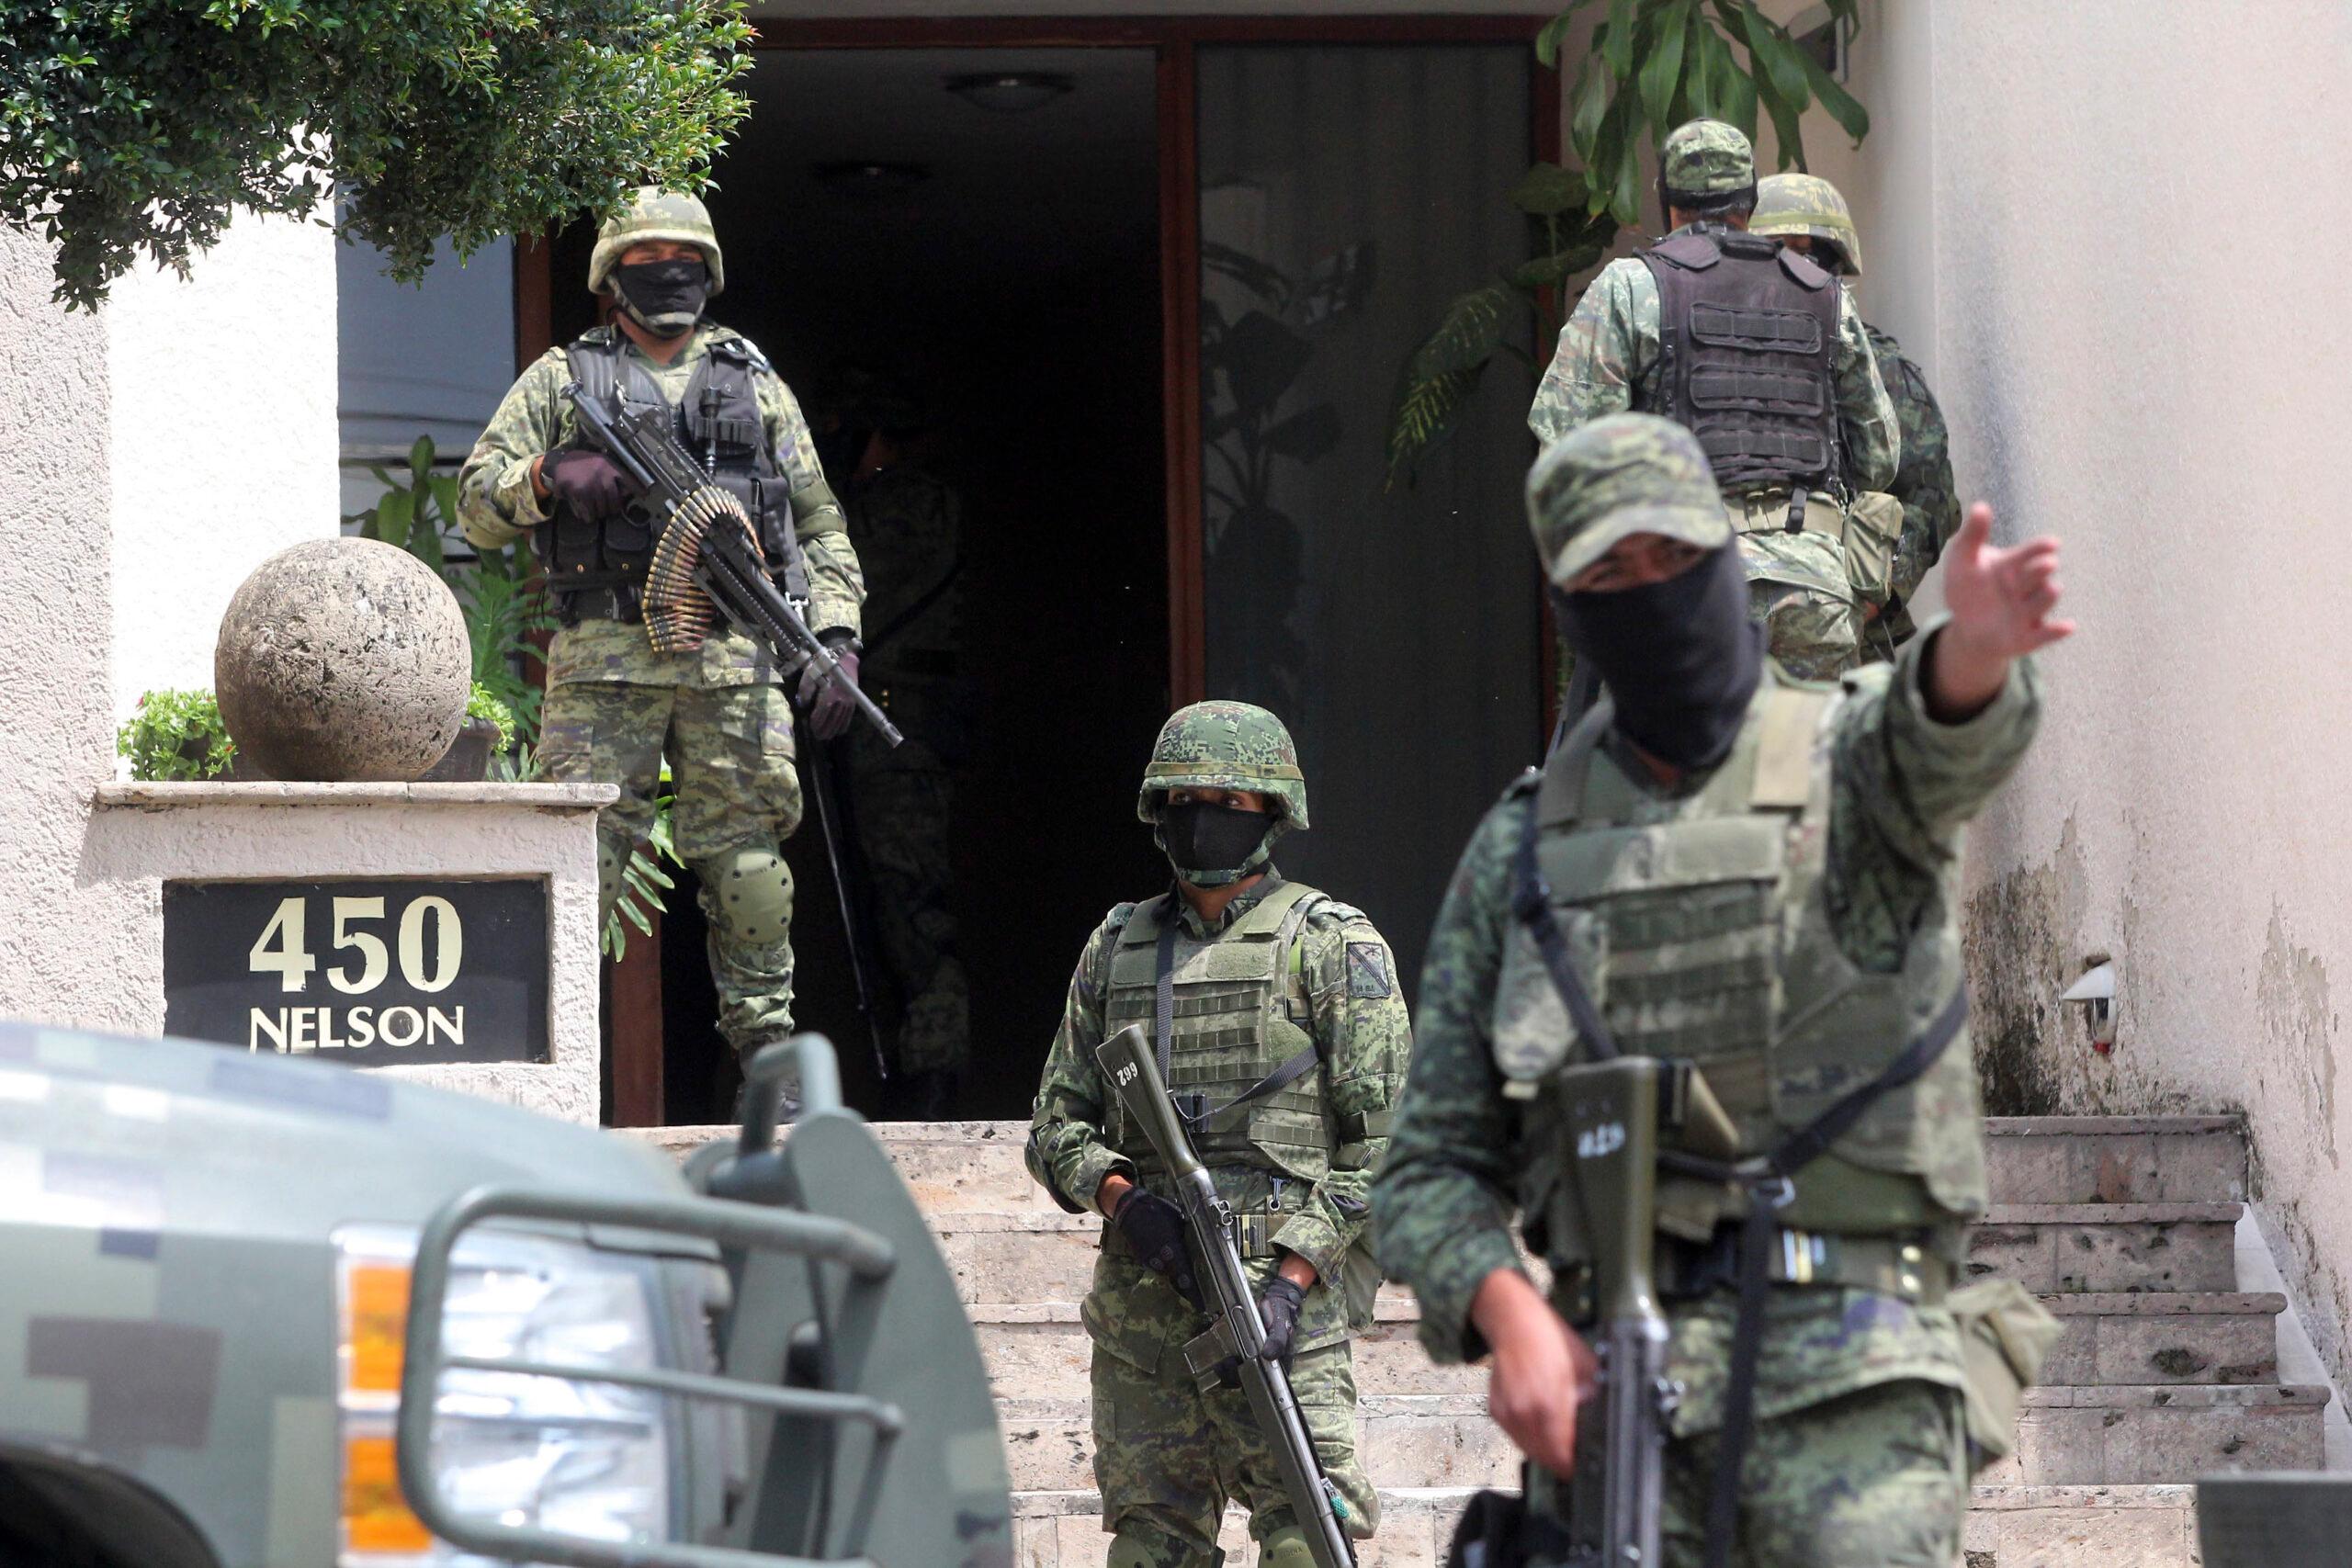 4 detenidos y el descubrimiento de un laboratorio, el saldo tras el operativo militar en Jalisco